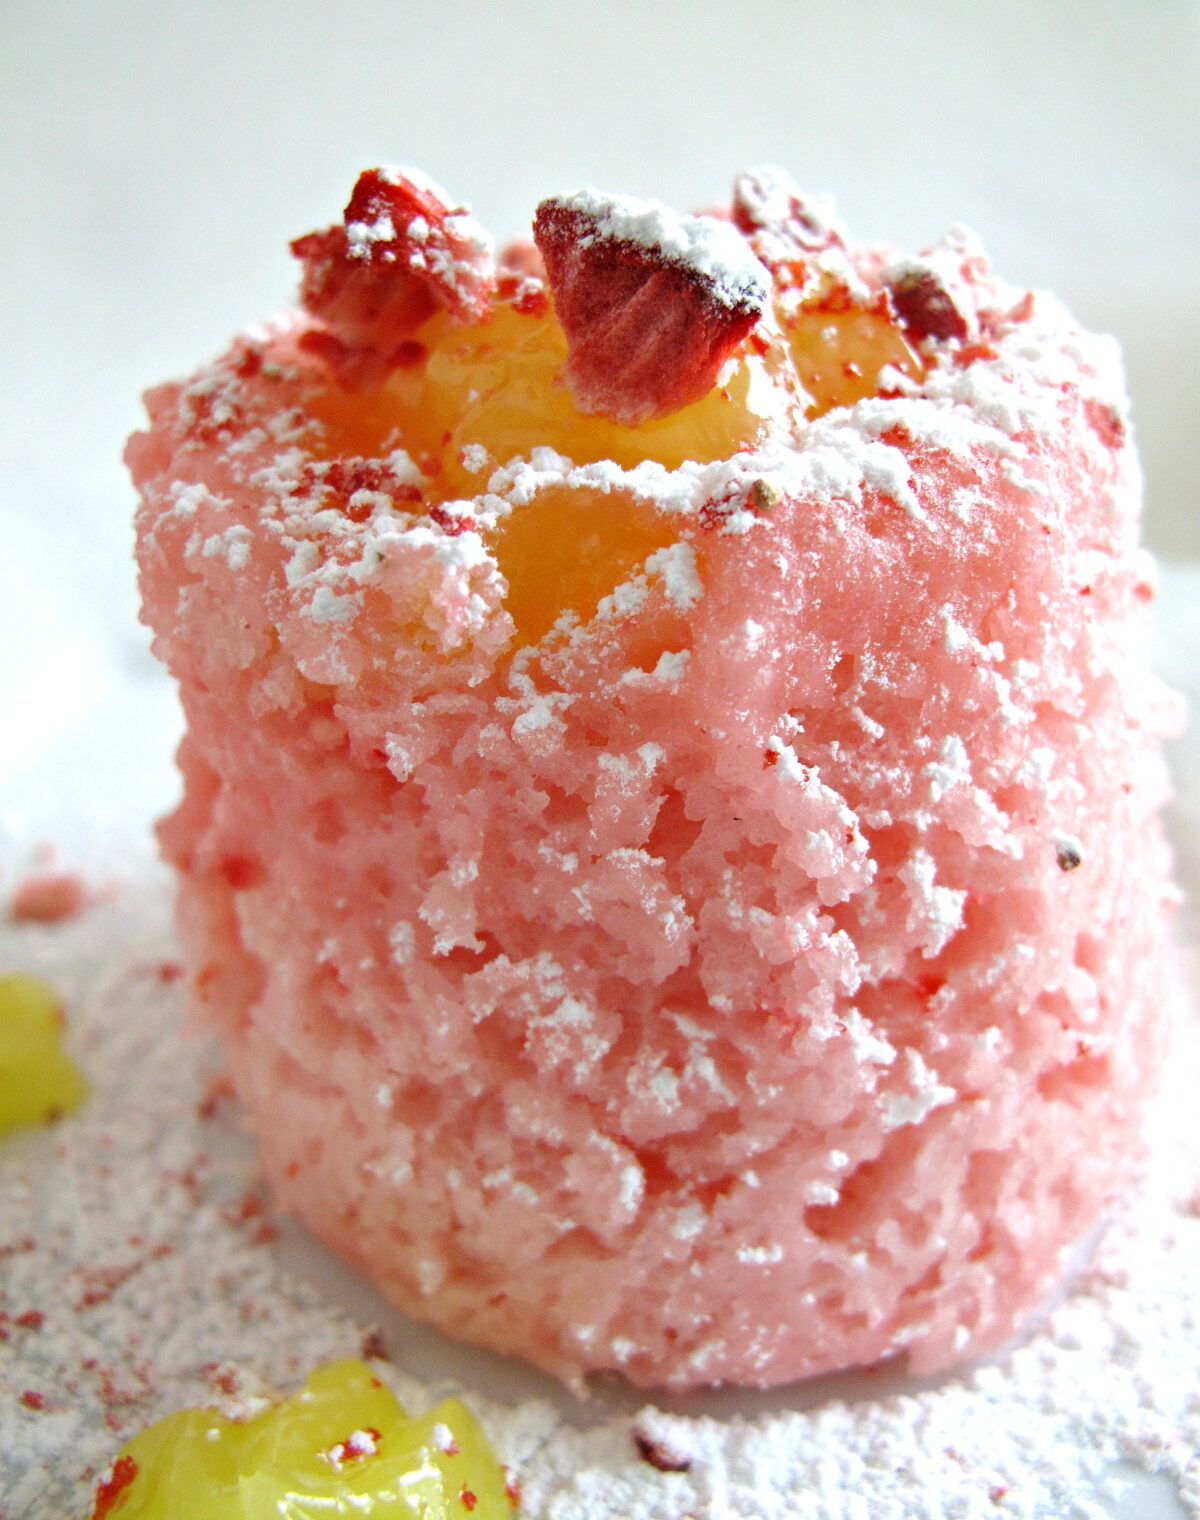 321 strawberry lemon mug cake closeup to show fluffy texture.